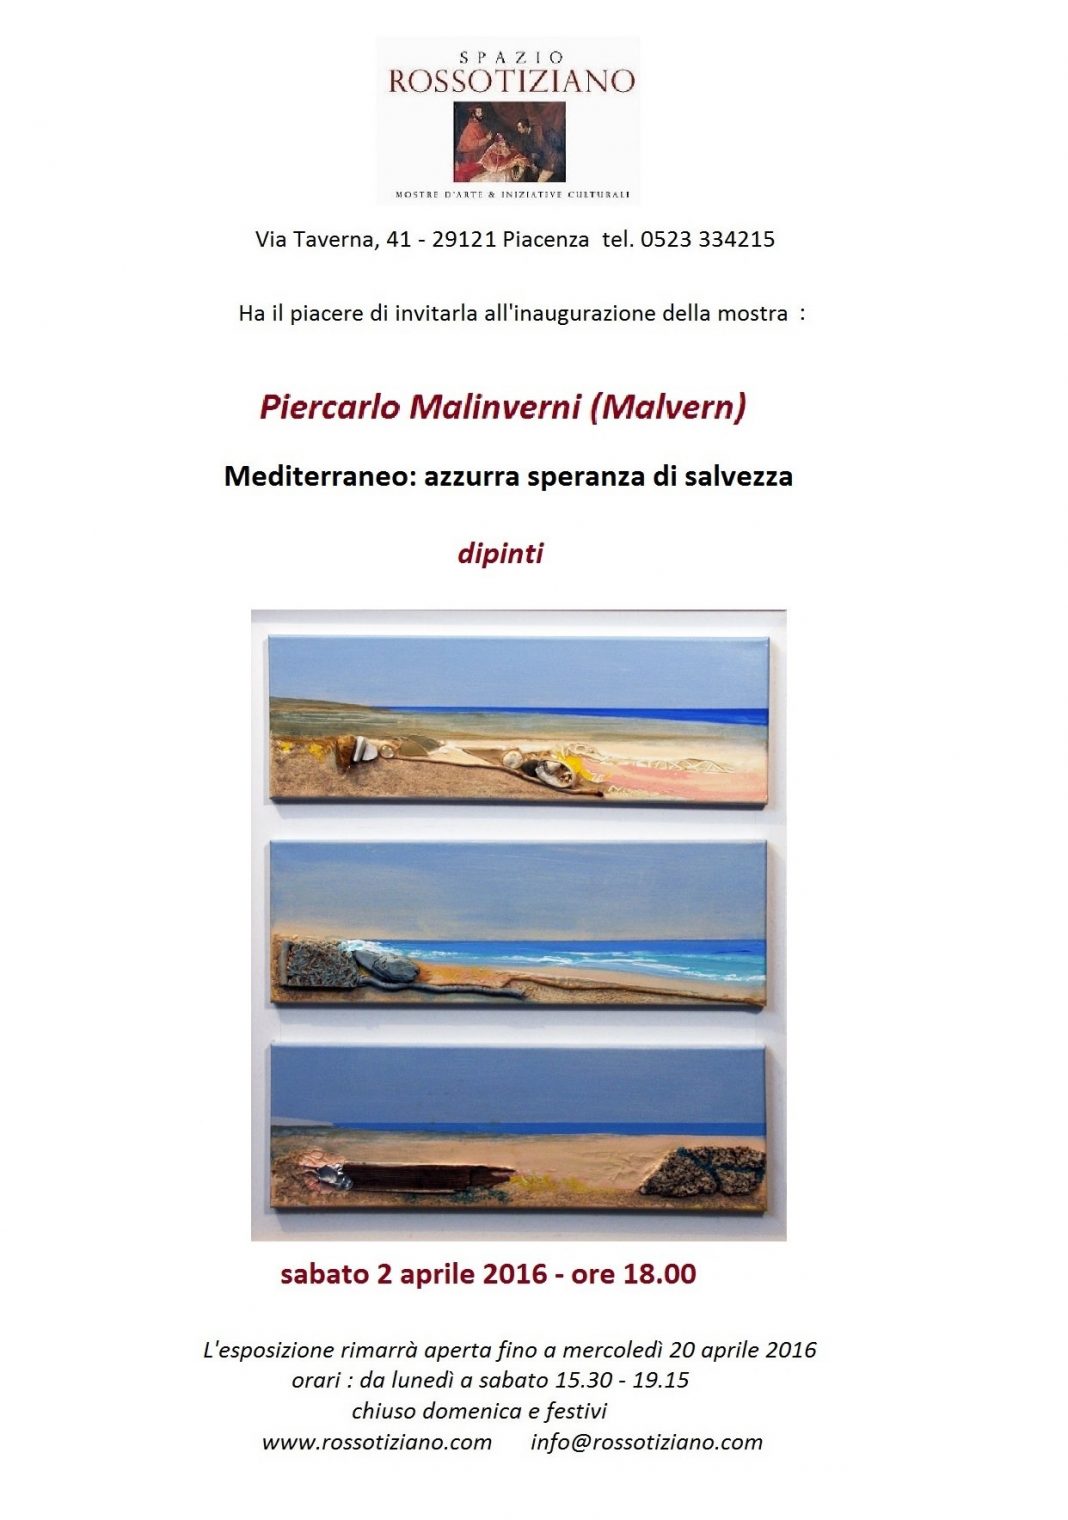 Piercarlo Malinverni – Mediterraneo: azzurra speranza di salvezzahttps://www.exibart.com/repository/media/eventi/2016/03/piercarlo-malinverni-8211-mediterraneo-azzurra-speranza-di-salvezza-1068x1520.jpg